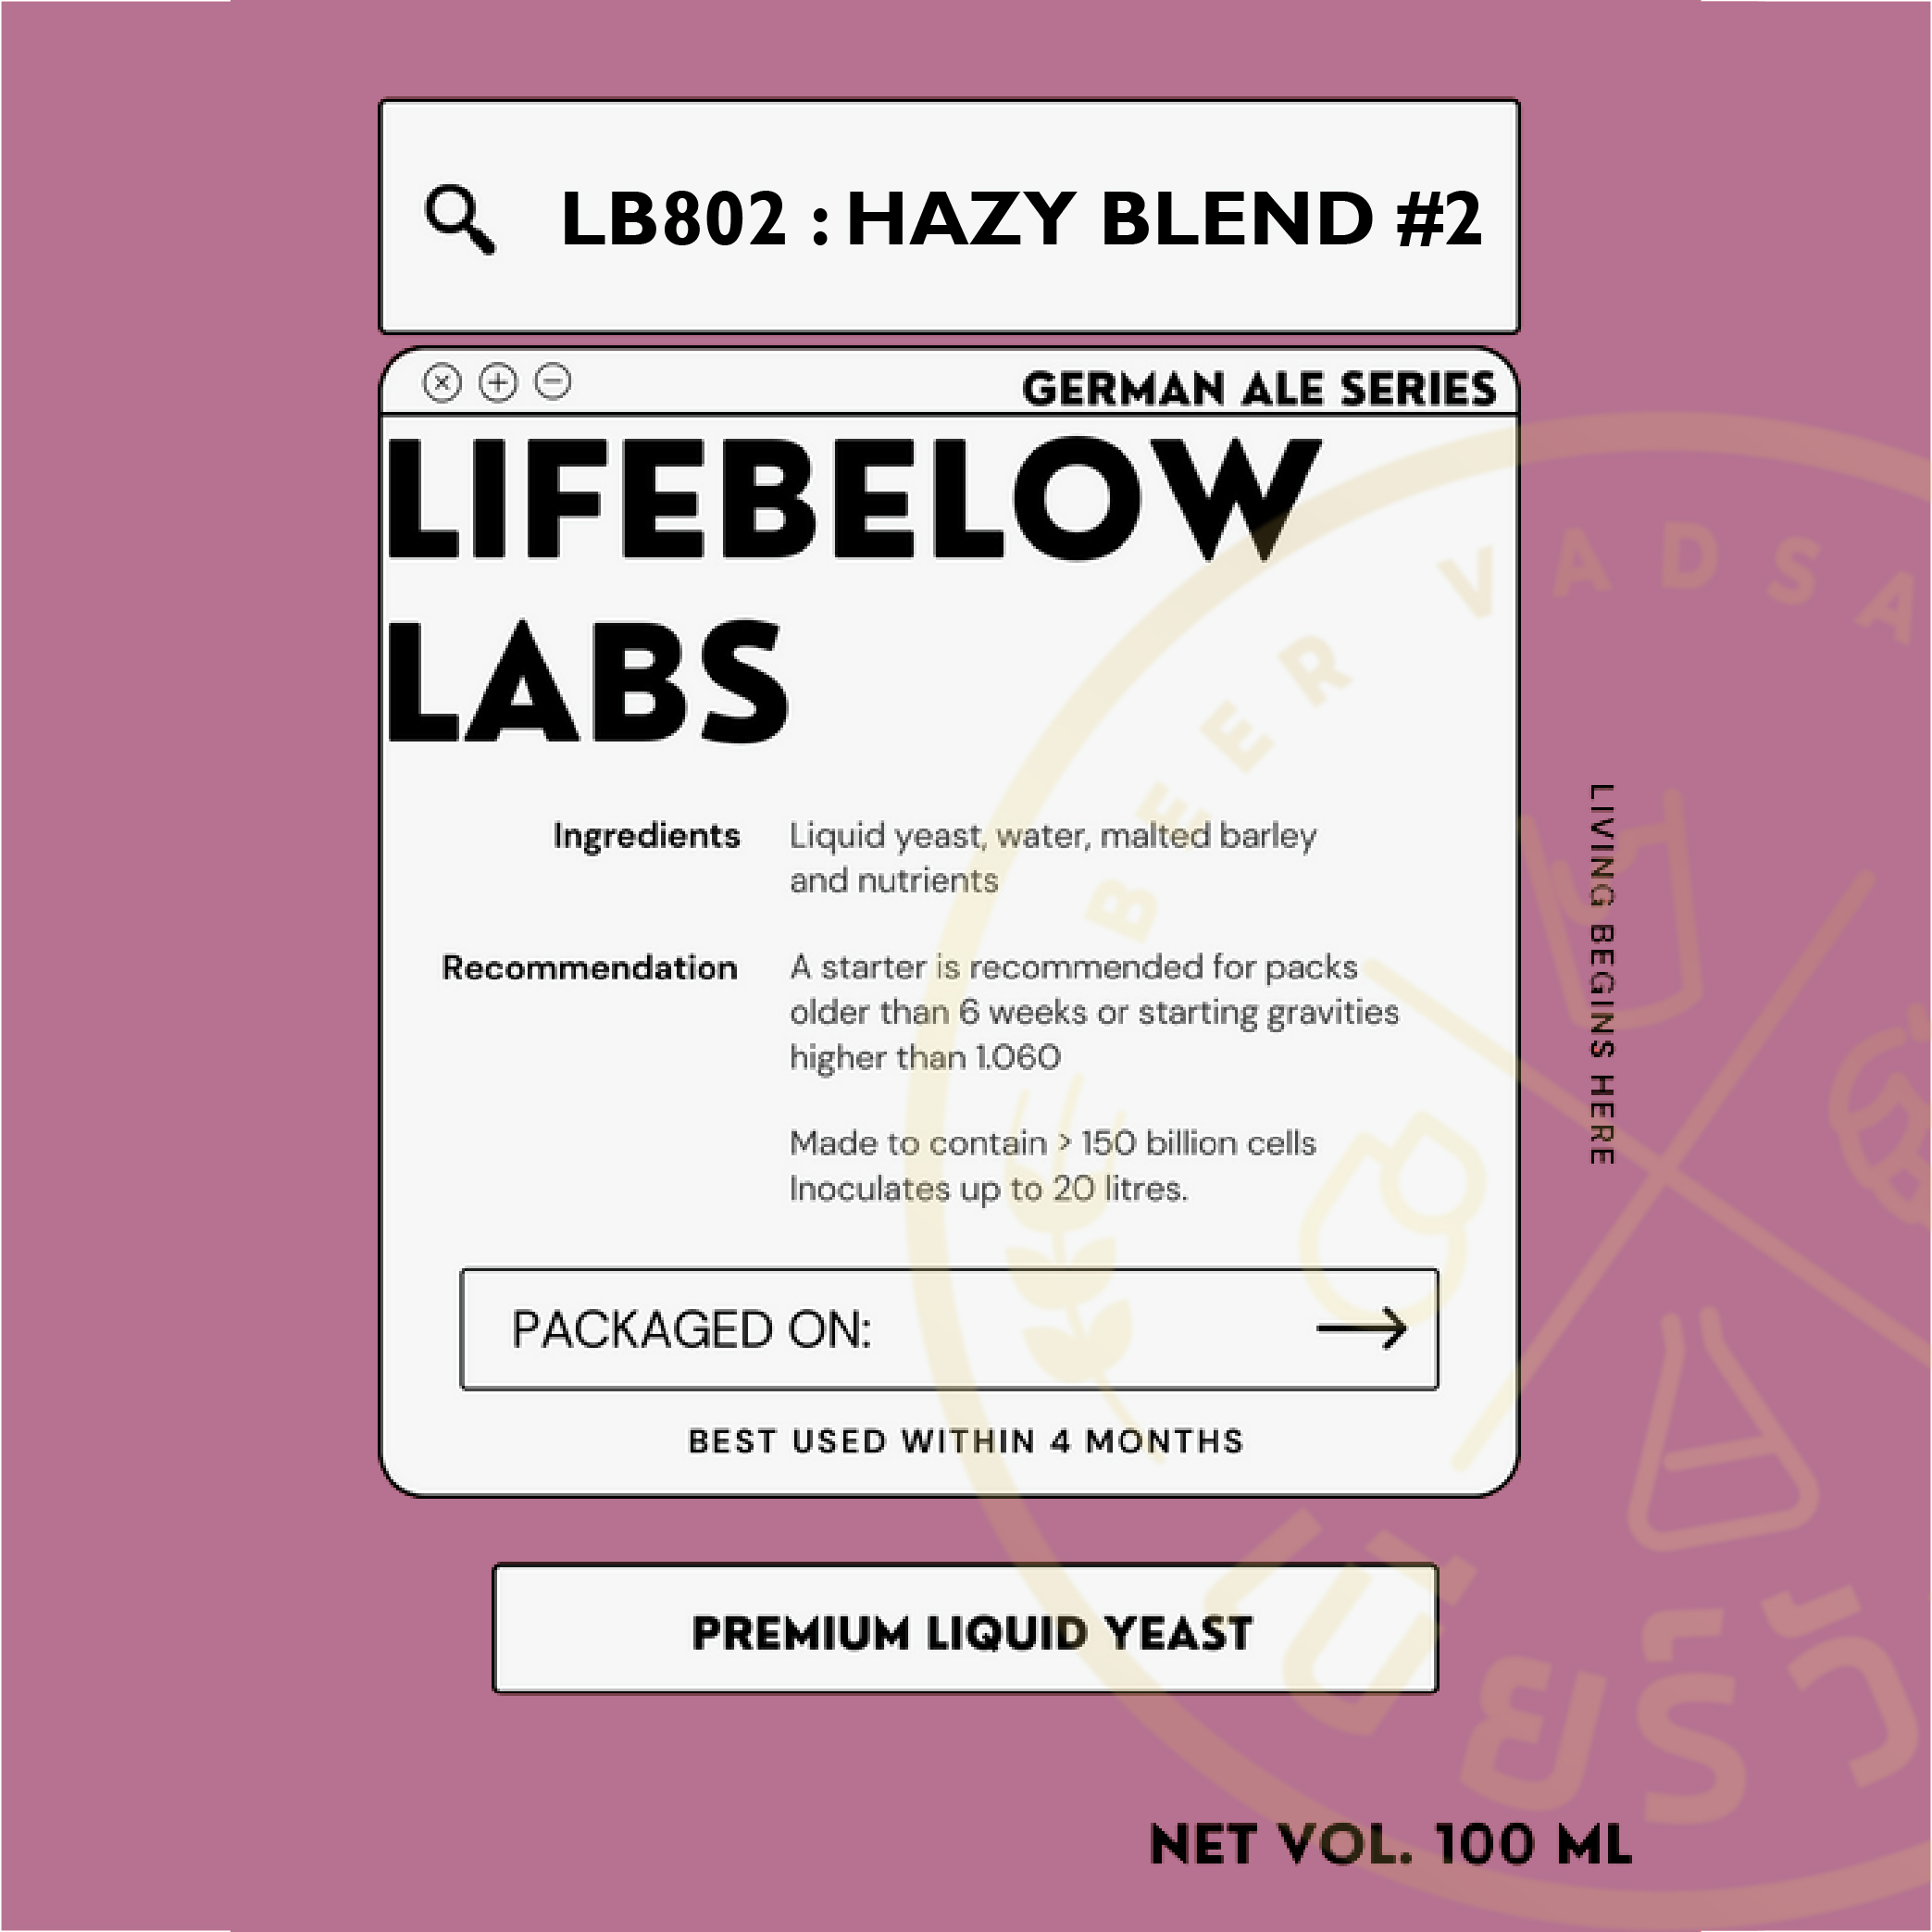 LB802 Hazy Blend #2 (Life Below)